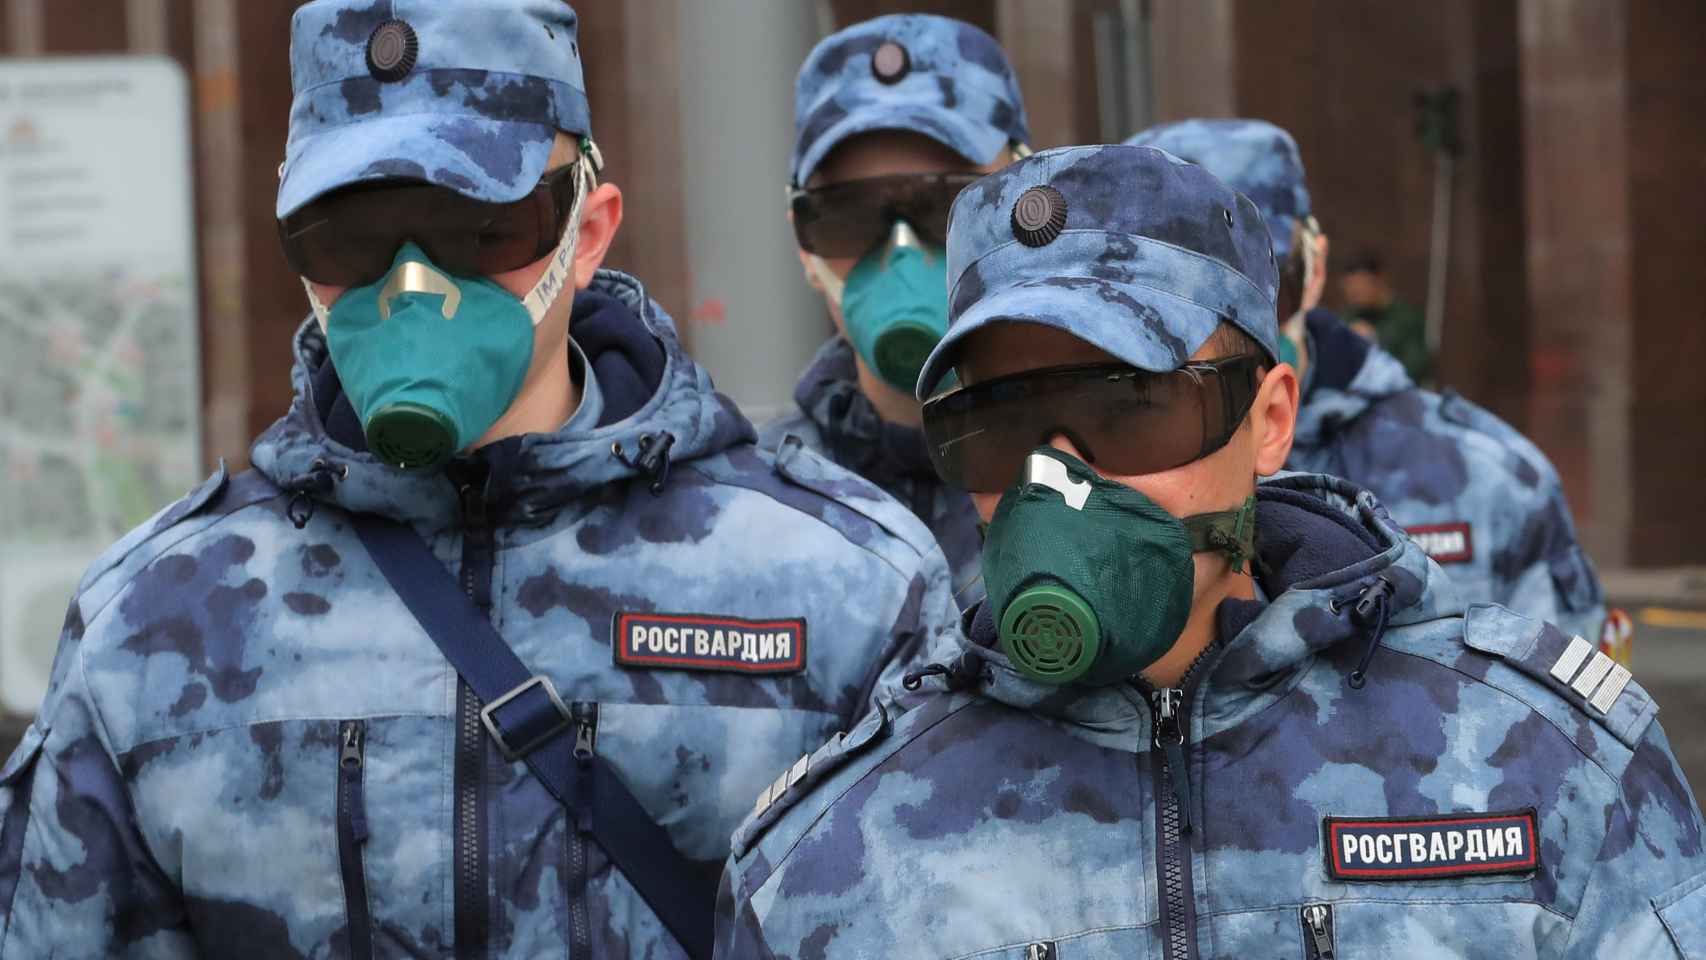 Rusia ha impuesto importantes medidas de vigilancia por la pandemia